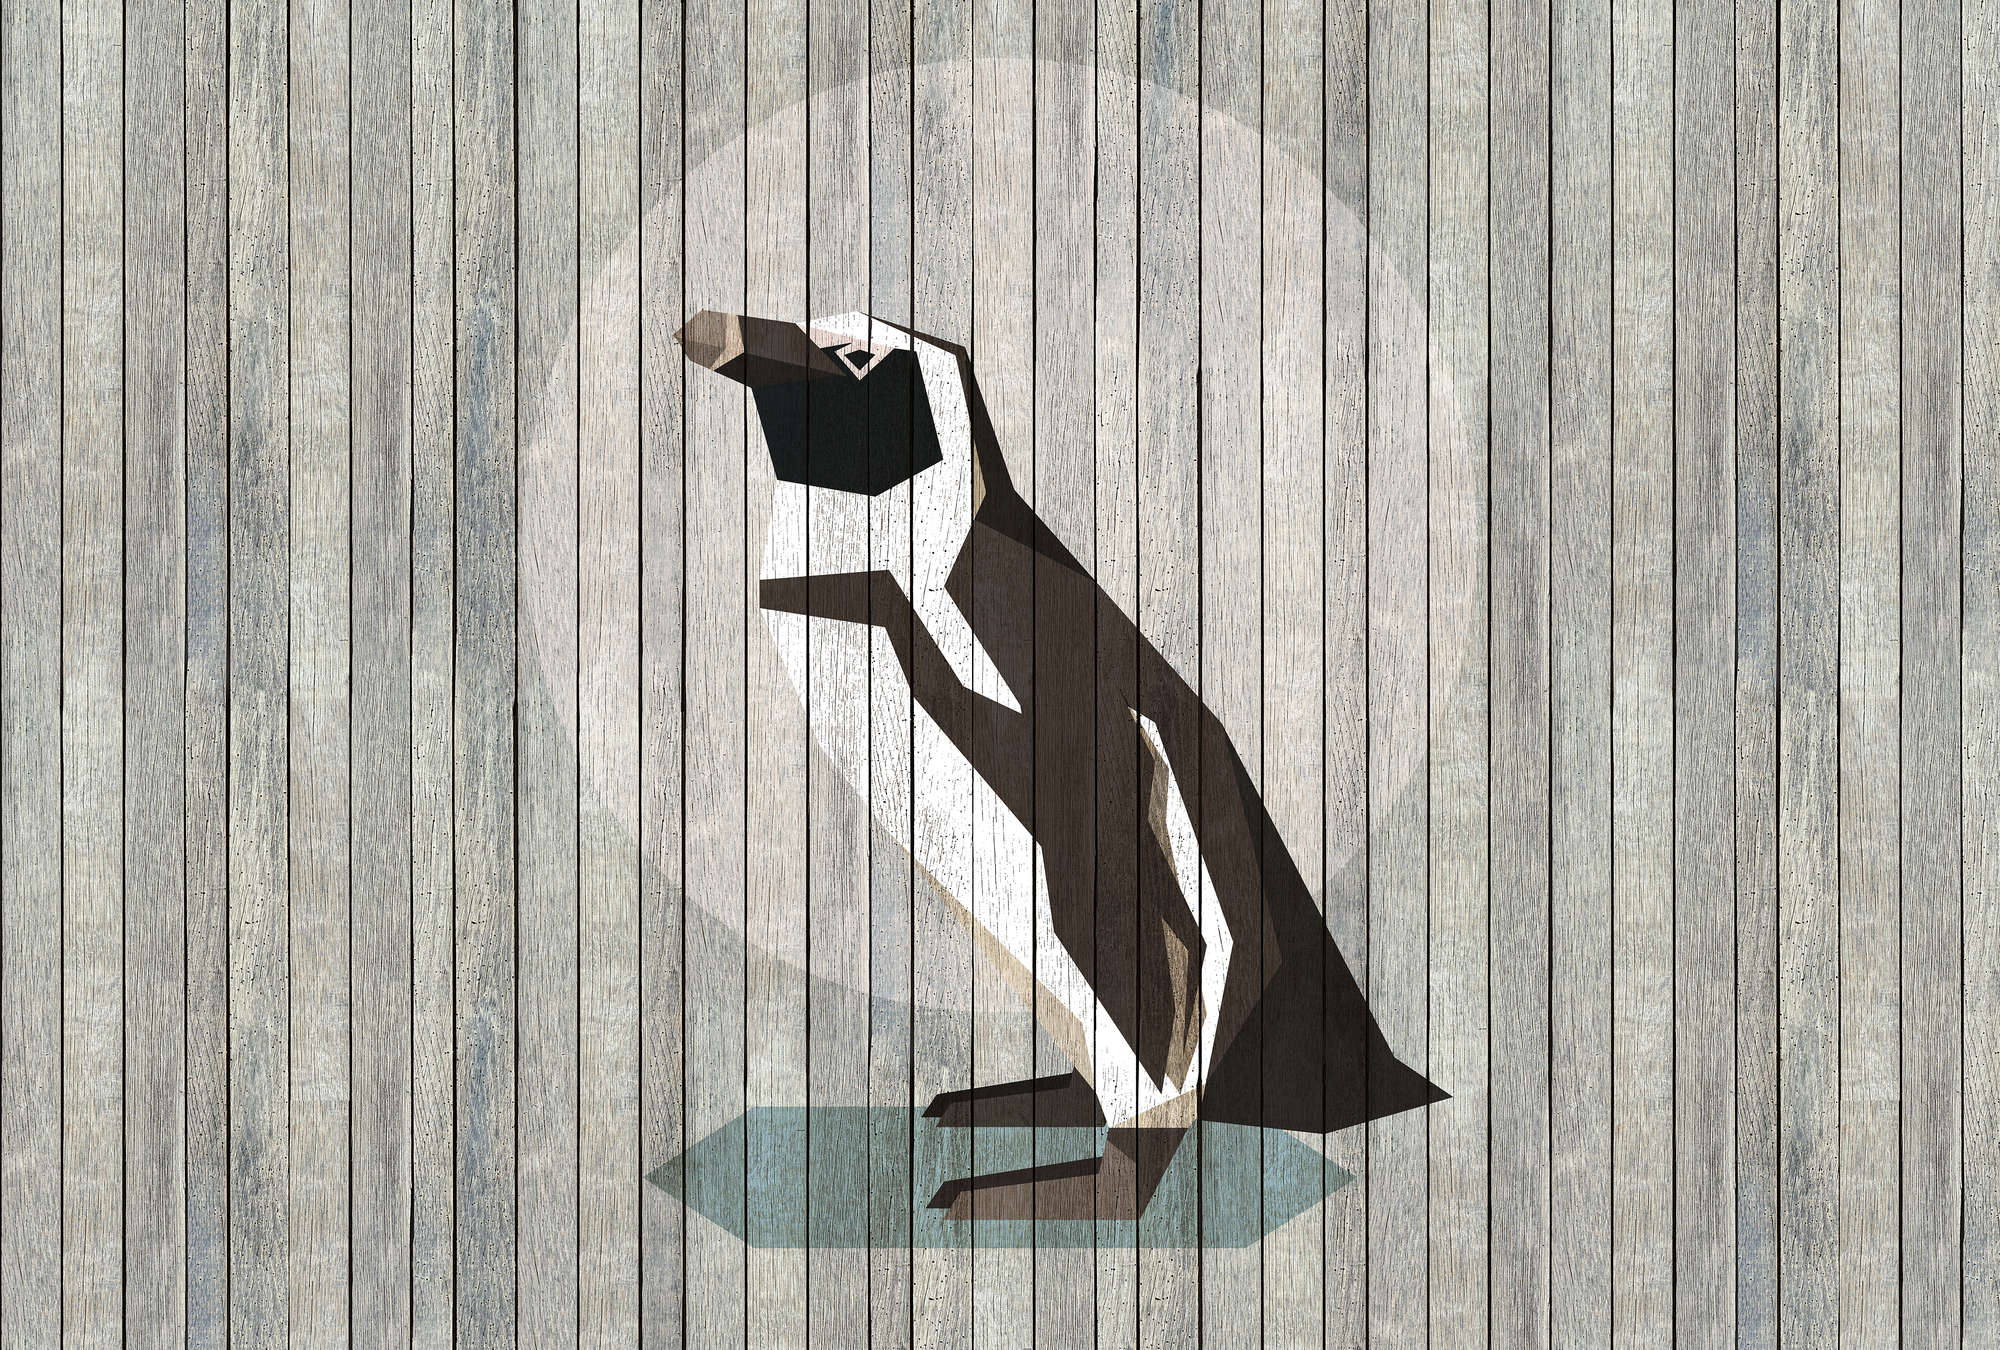             Born to Be Wild 4 - Digital behang Penguin op board muur - Houten panelen breed - Beige, Blauw | Parelmoer glad vlies
        